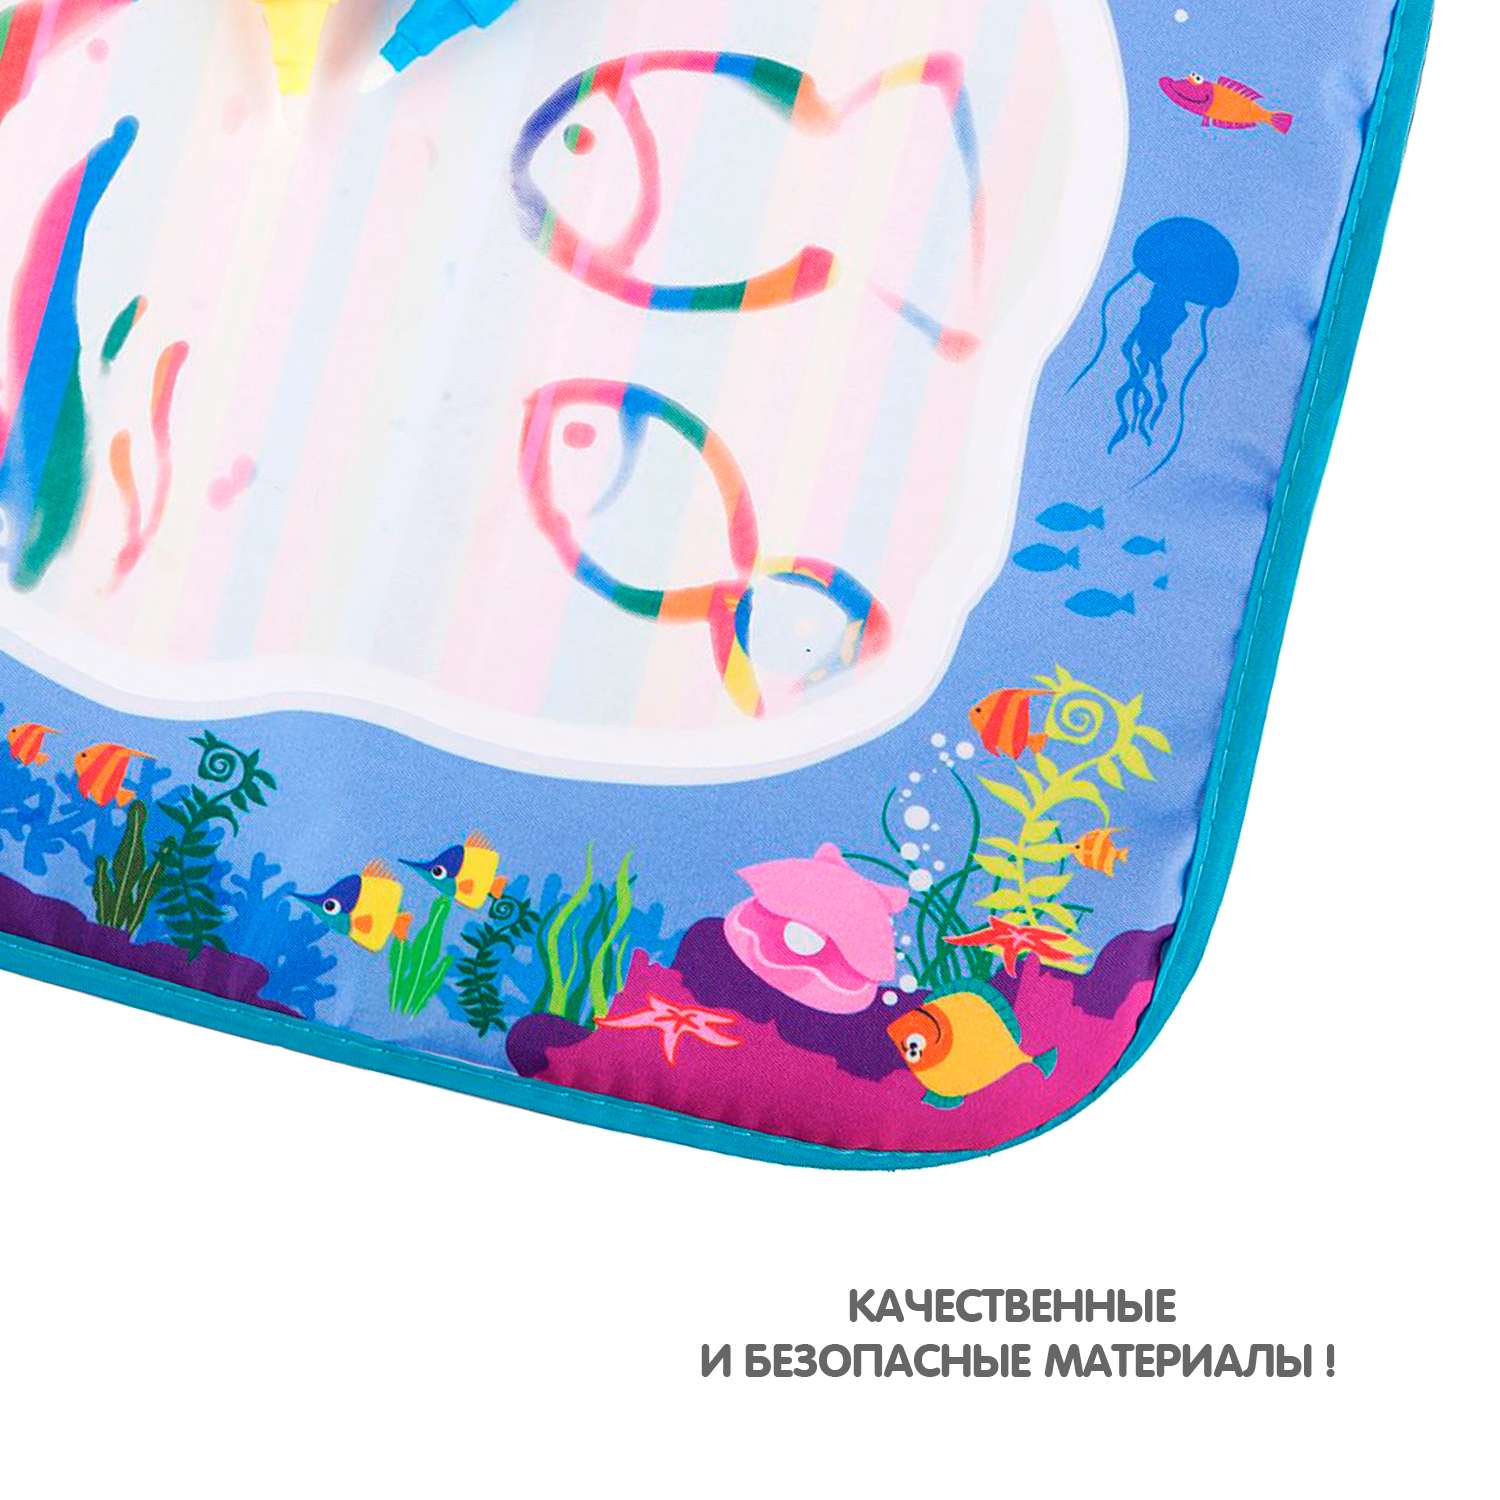 Водная раскраска BONDIBON Коврик для рисования Море серия Baby you - фото 11